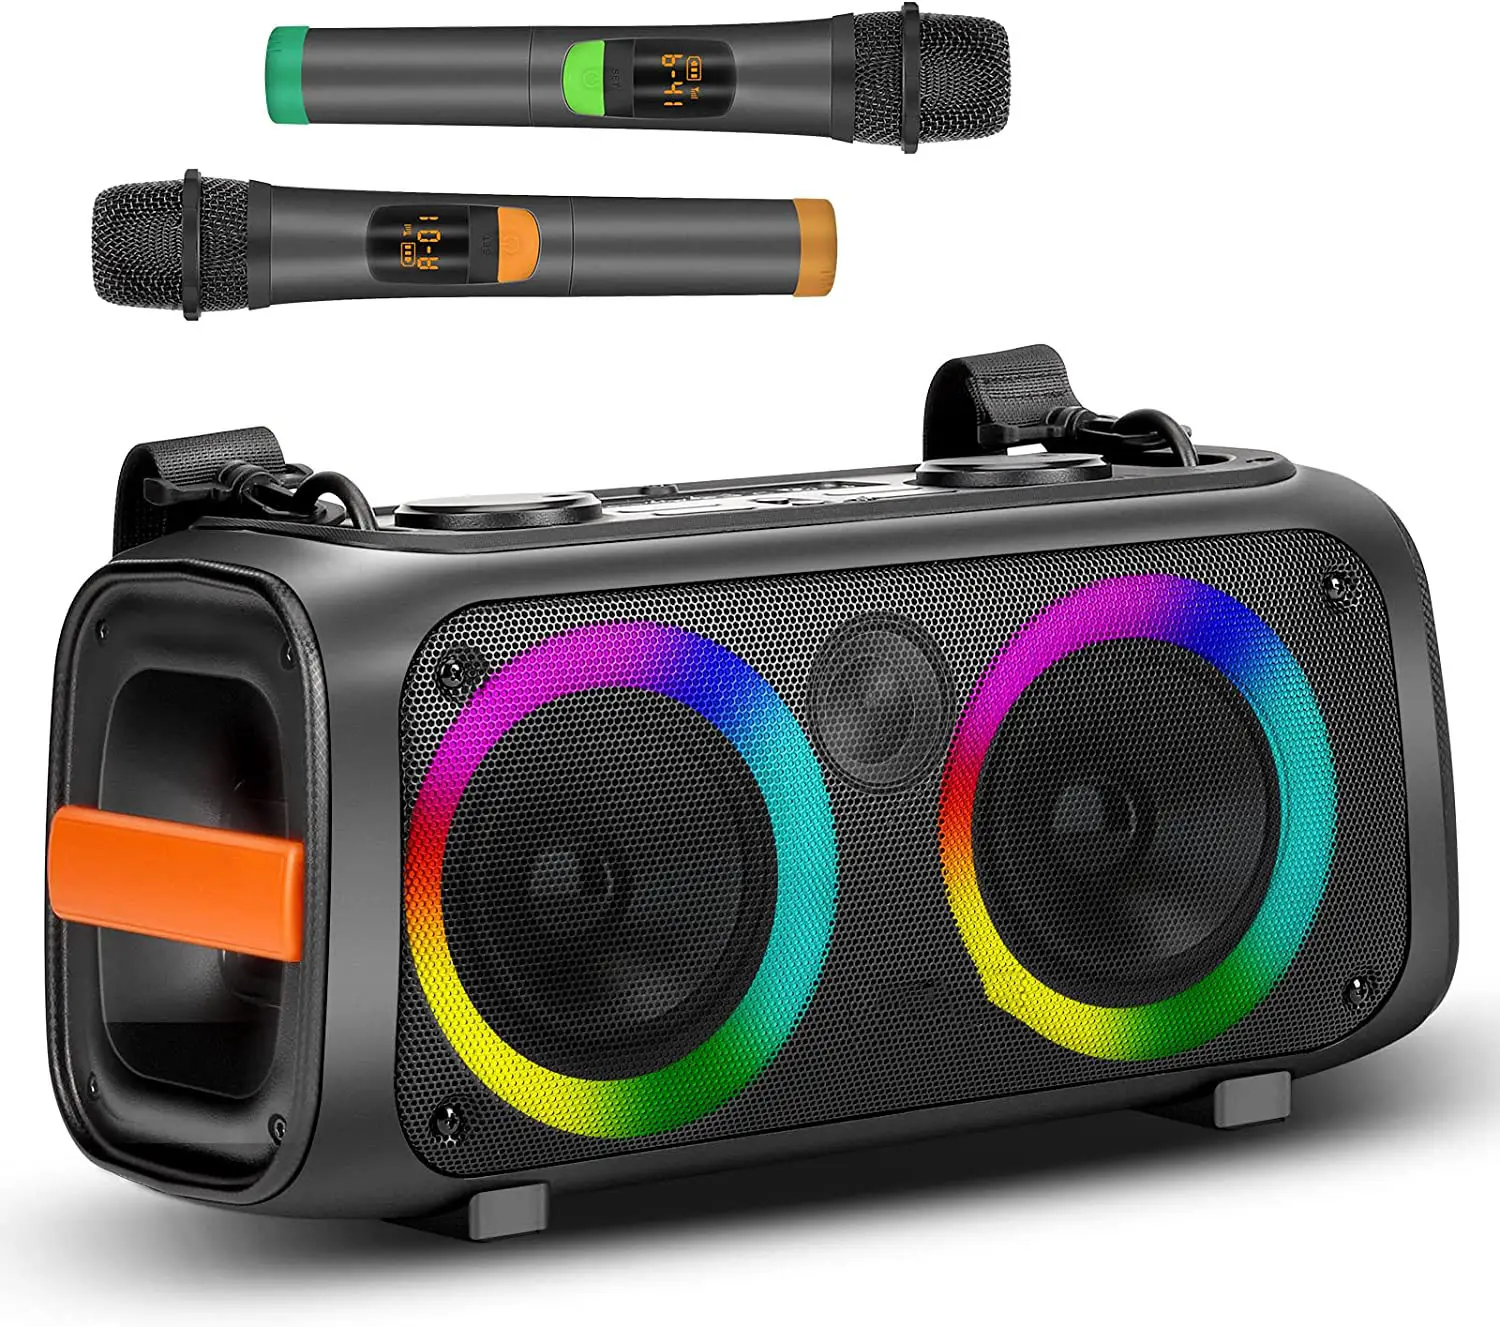 Amplifier speaker portabel dengan baterai mesin Karaoke untuk dewasa dan anak-anak PA sistem audio Speaker Bluetooth LED loudspeaker